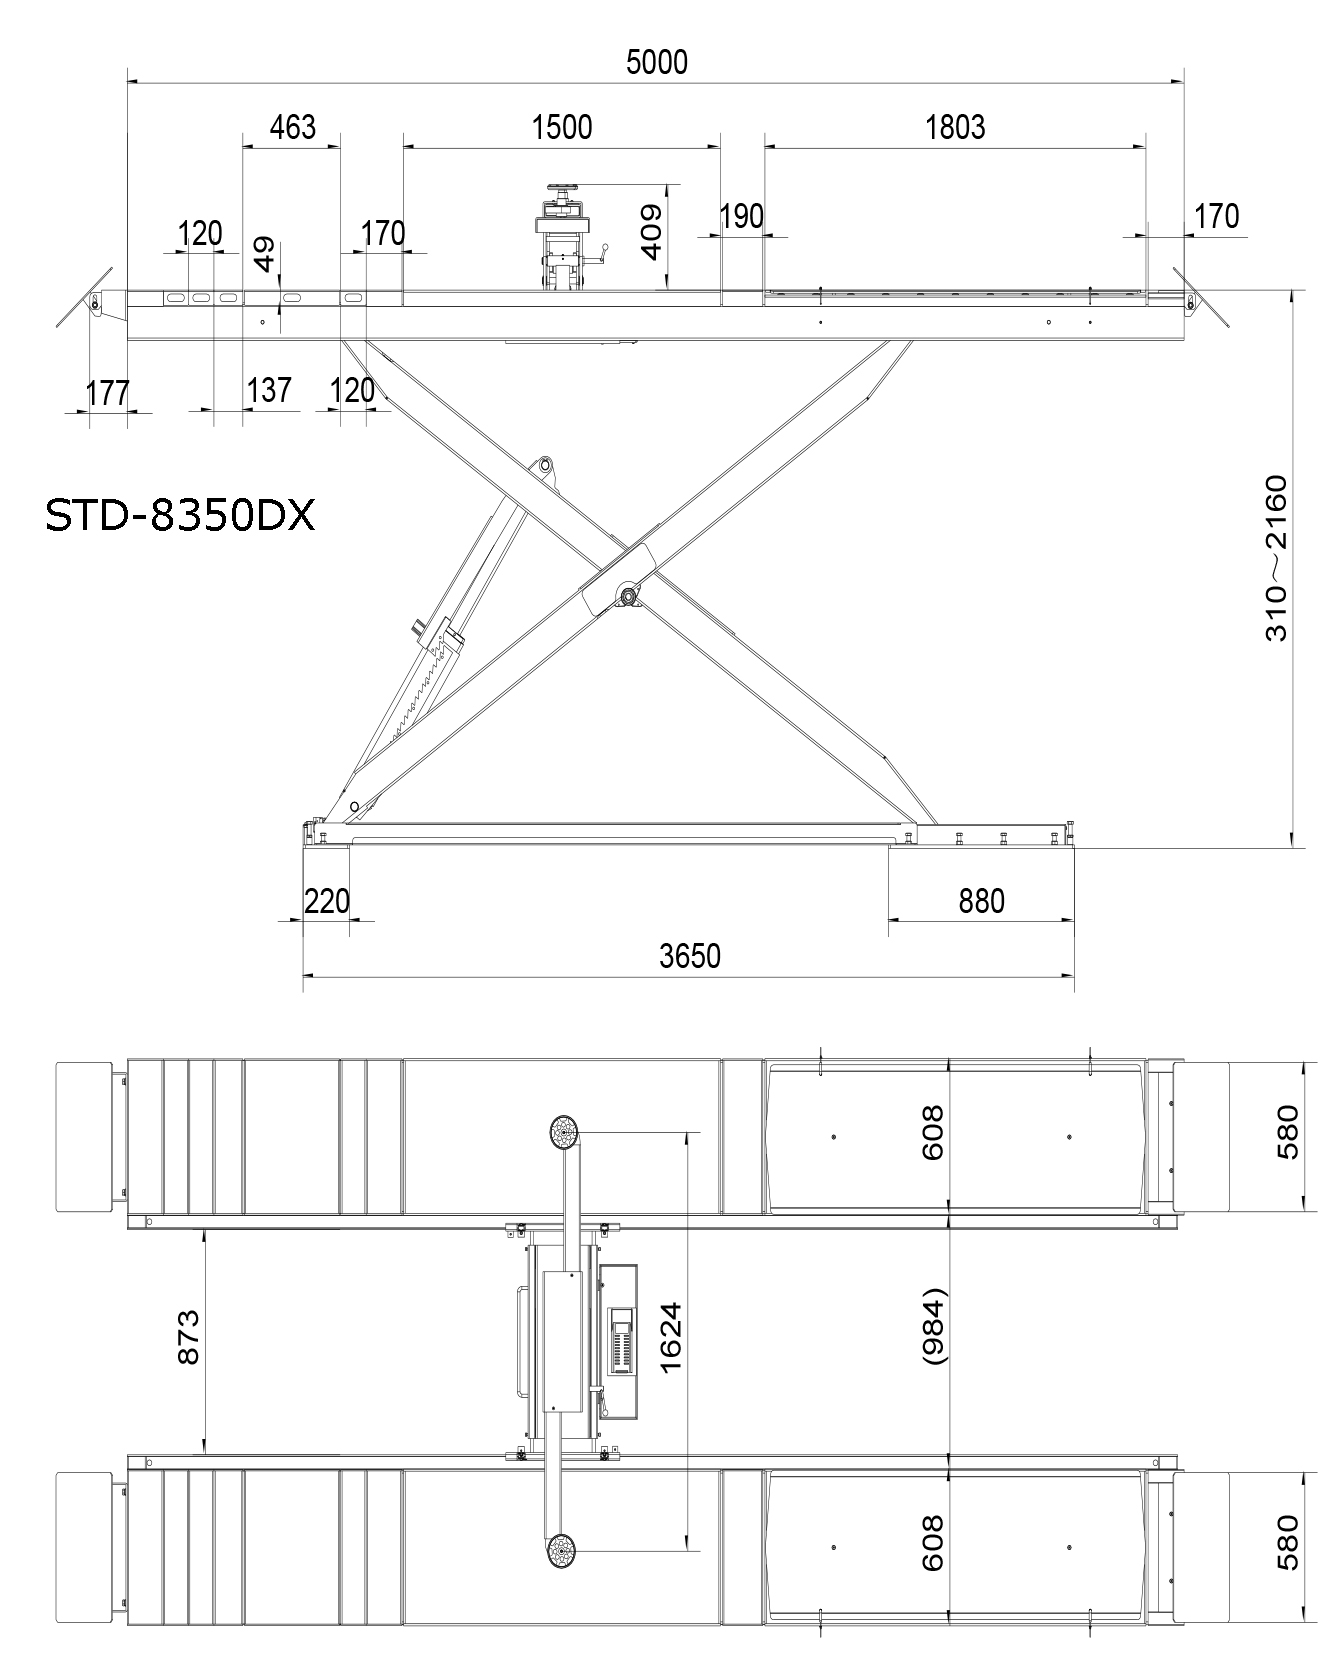 Cầu nâng kiểu cắt kéo 1 tầng nâng STD-8350DX - 5 tấn